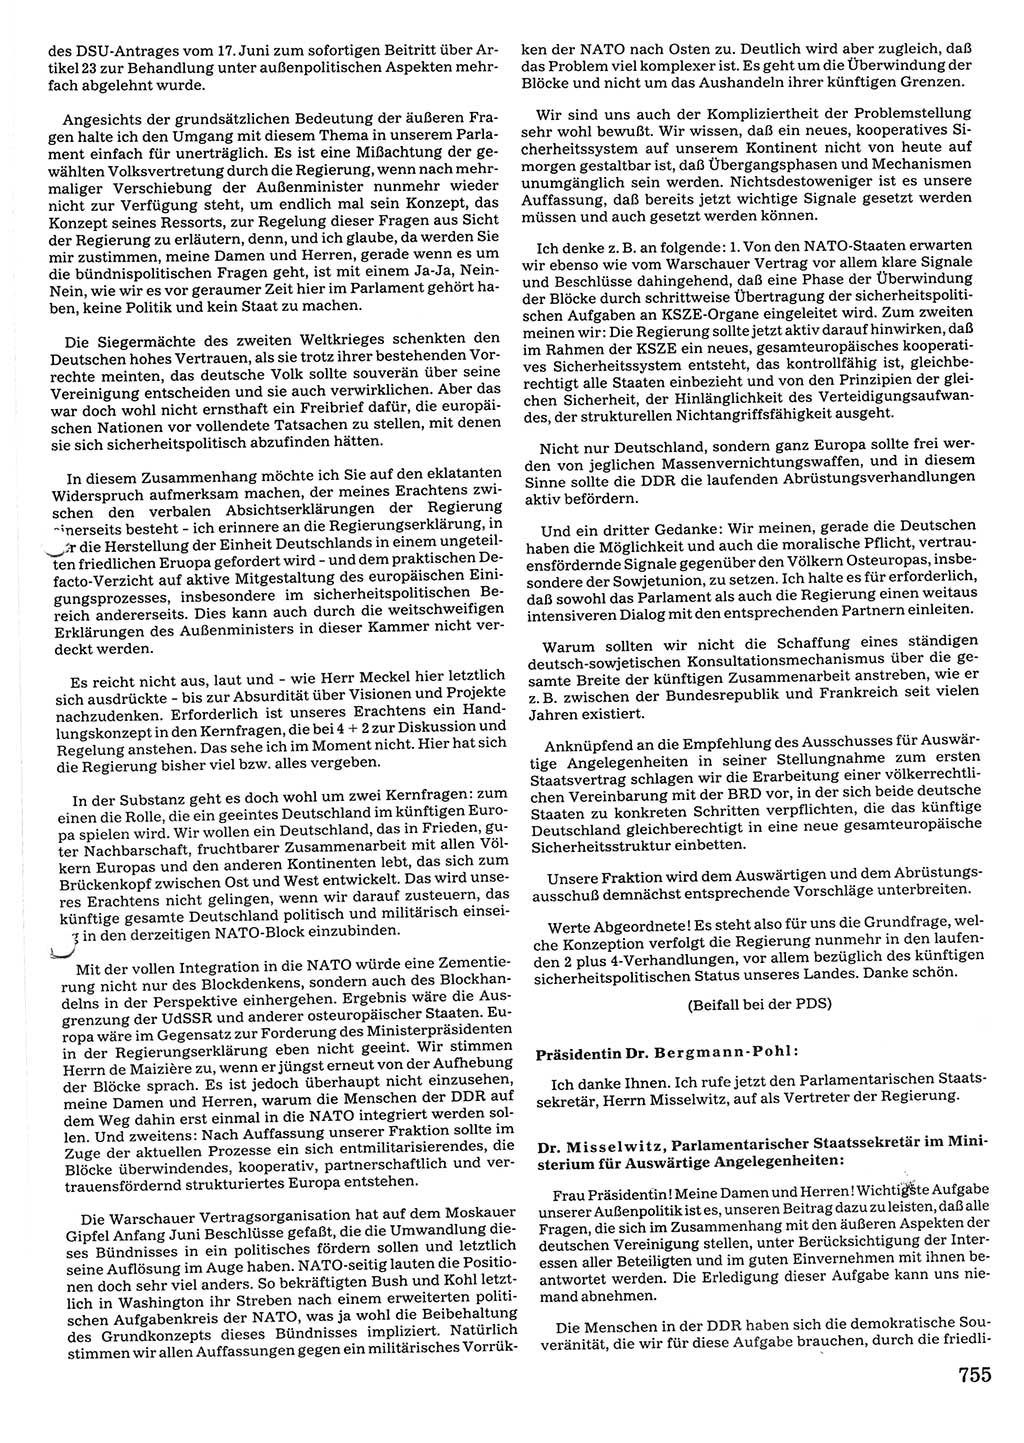 Tagungen der Volkskammer (VK) der Deutschen Demokratischen Republik (DDR), 10. Wahlperiode 1990, Seite 755 (VK. DDR 10. WP. 1990, Prot. Tg. 1-38, 5.4.-2.10.1990, S. 755)